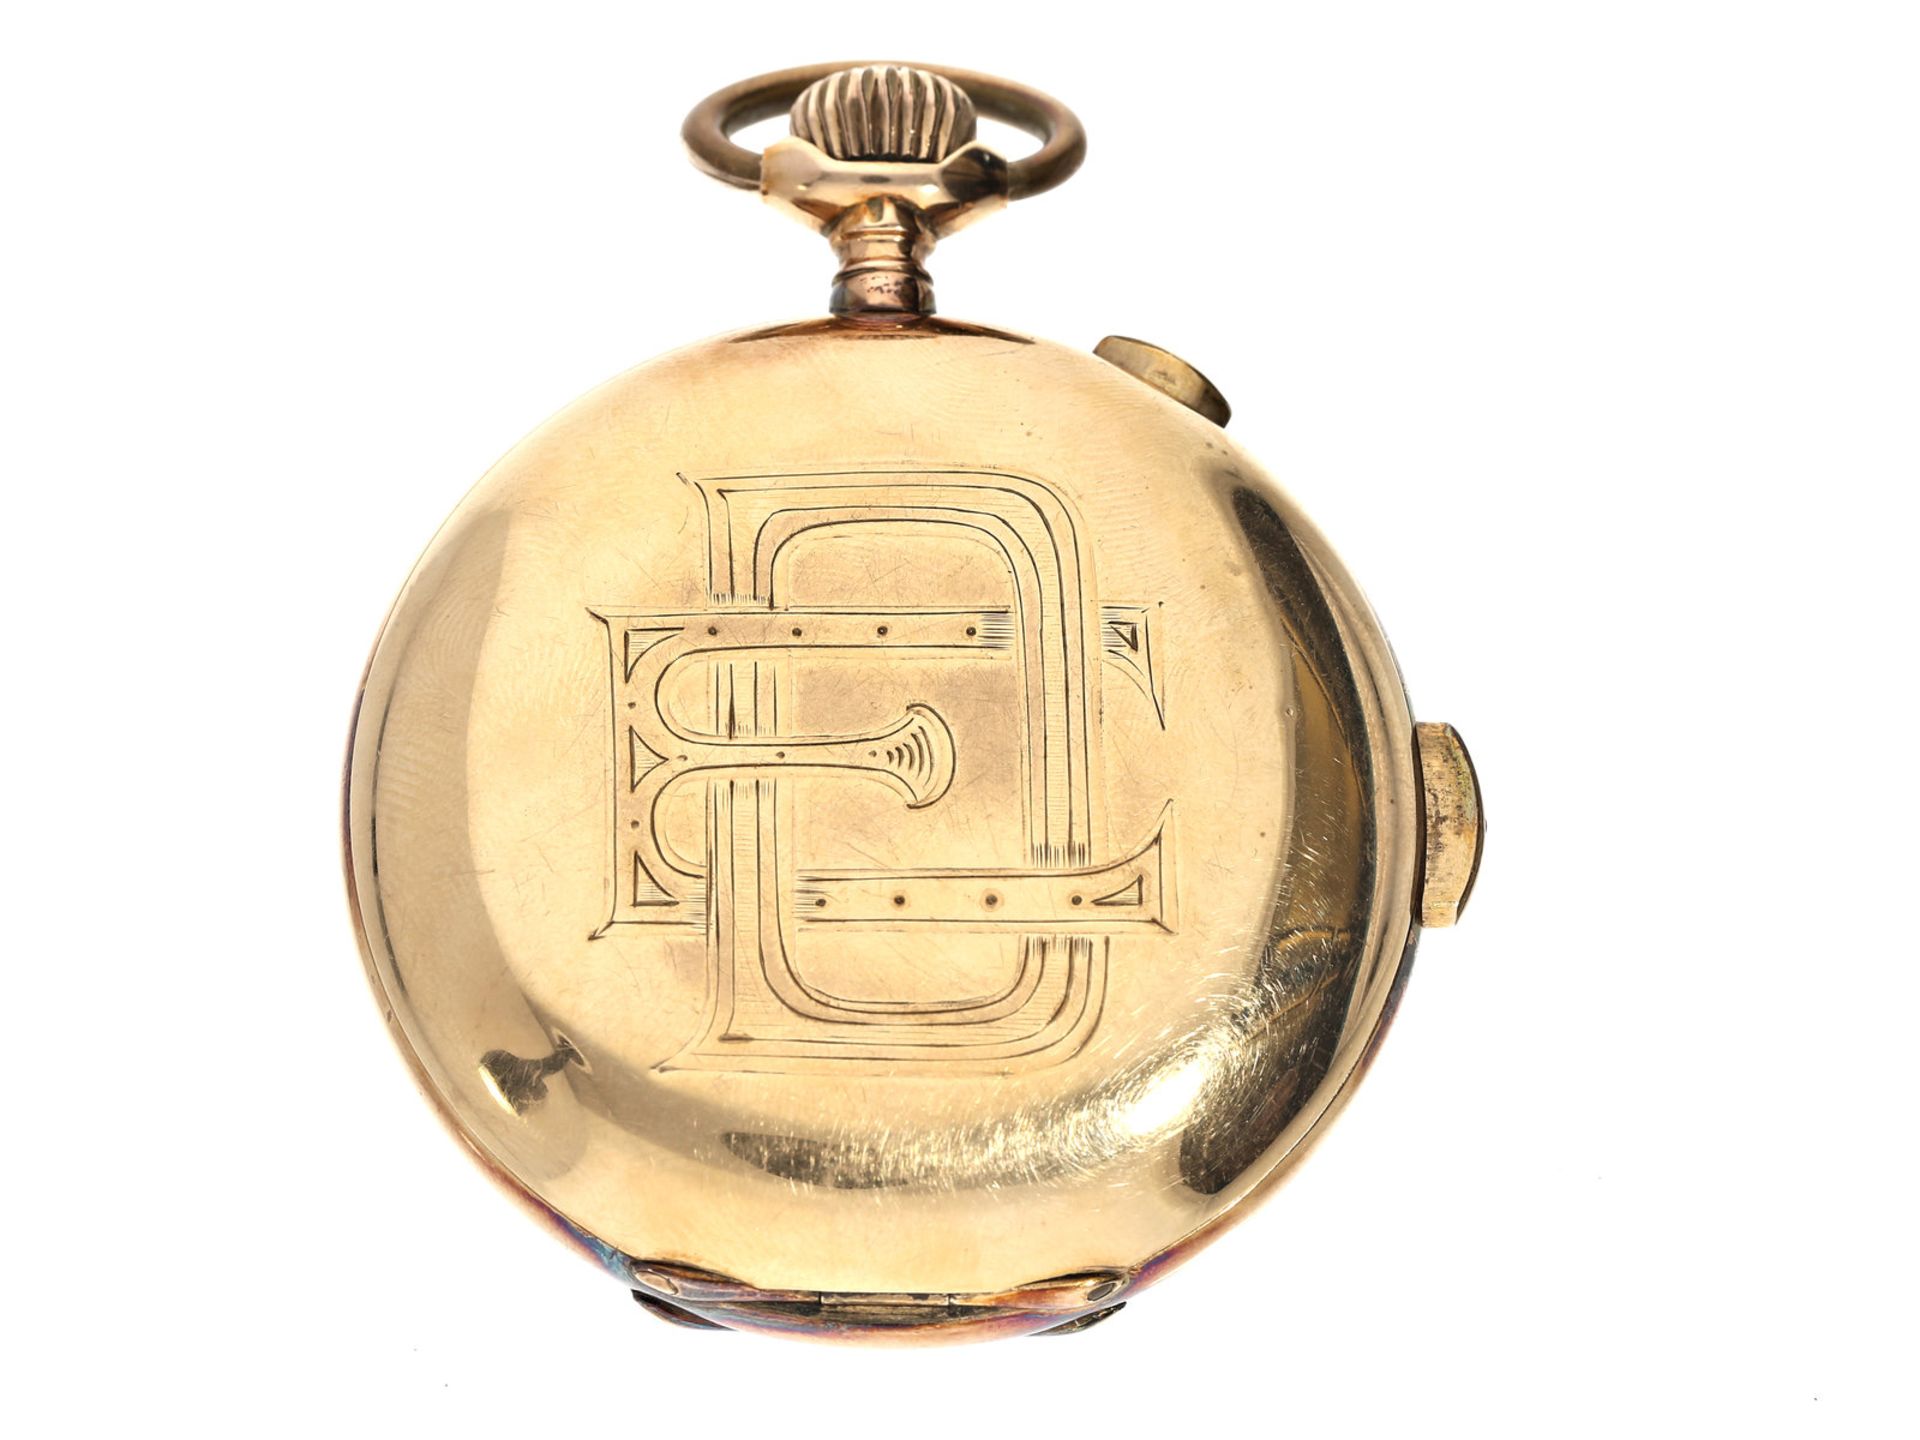 Taschenuhr: schwere goldene Savonnette mit Chronograph und Repetition, Union Horlogere, um 1900Ca. - Bild 3 aus 3